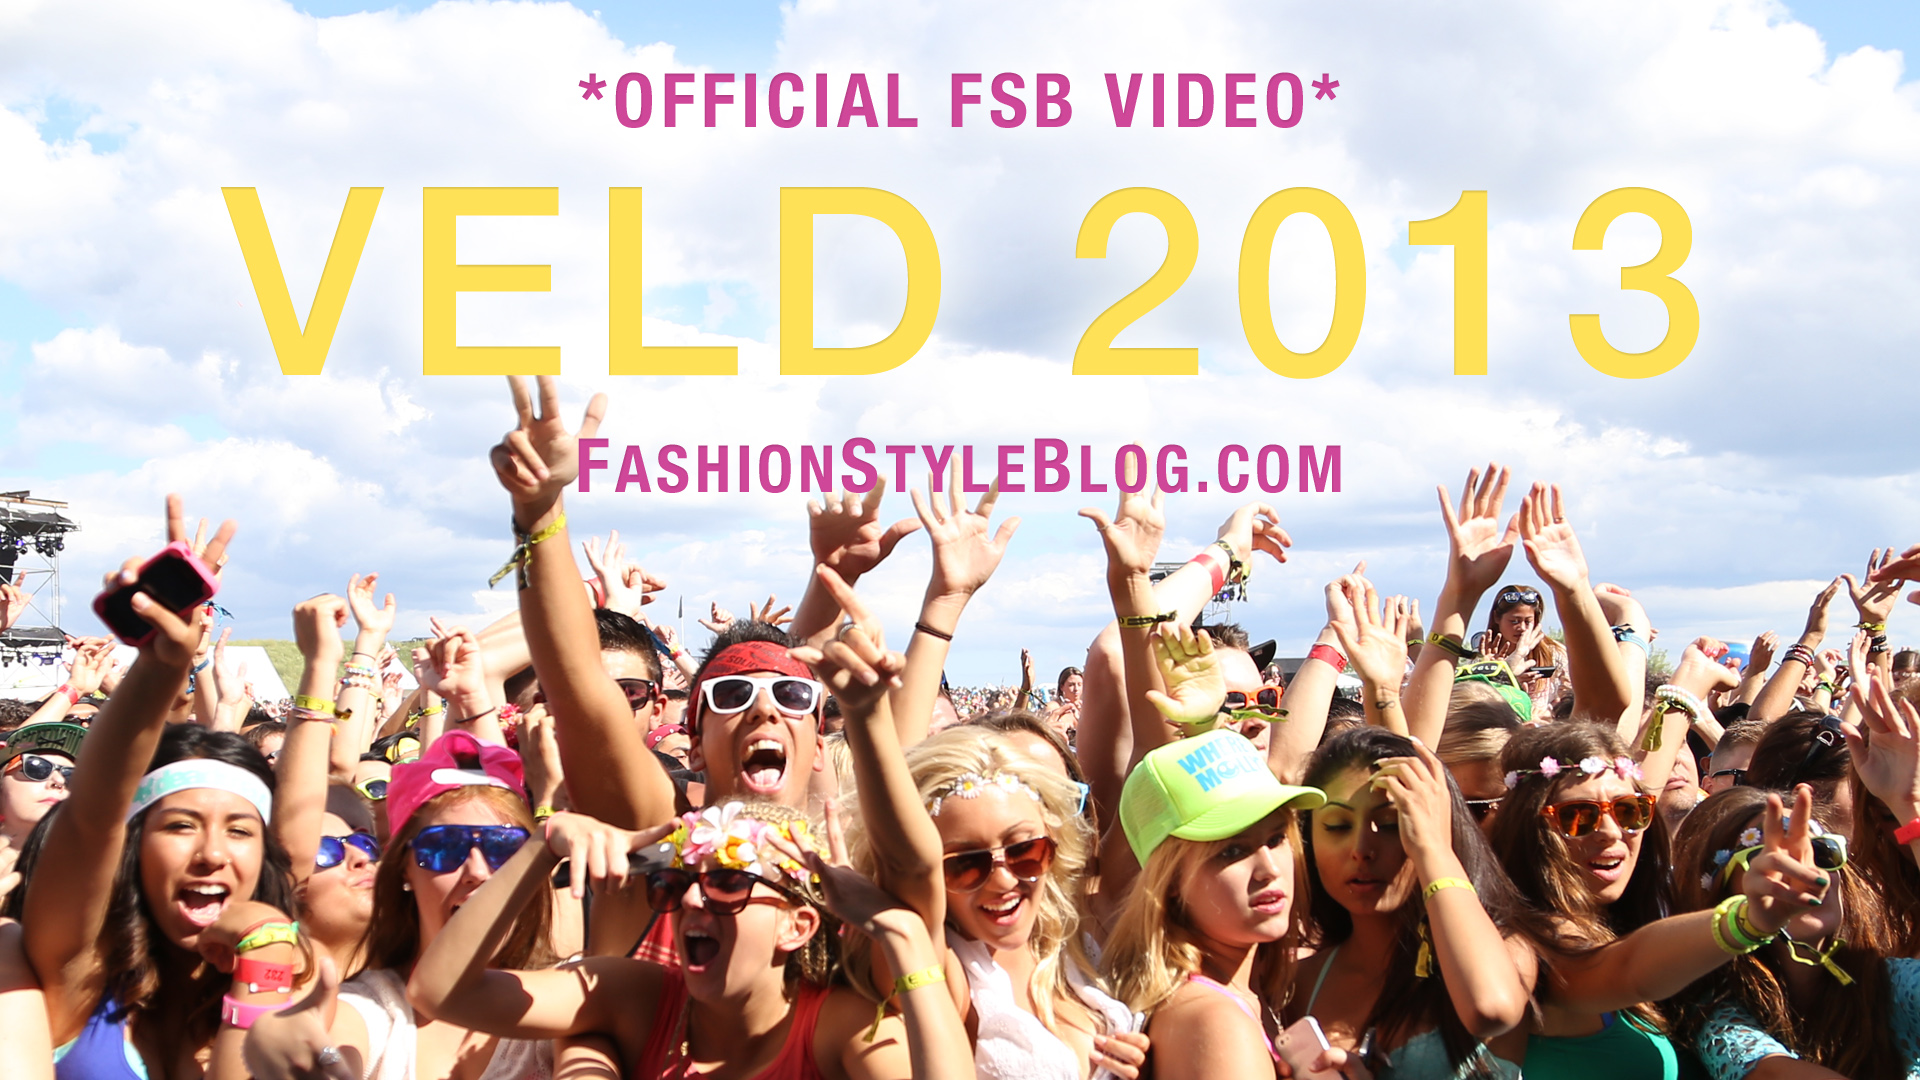 Official Veld Video FSB